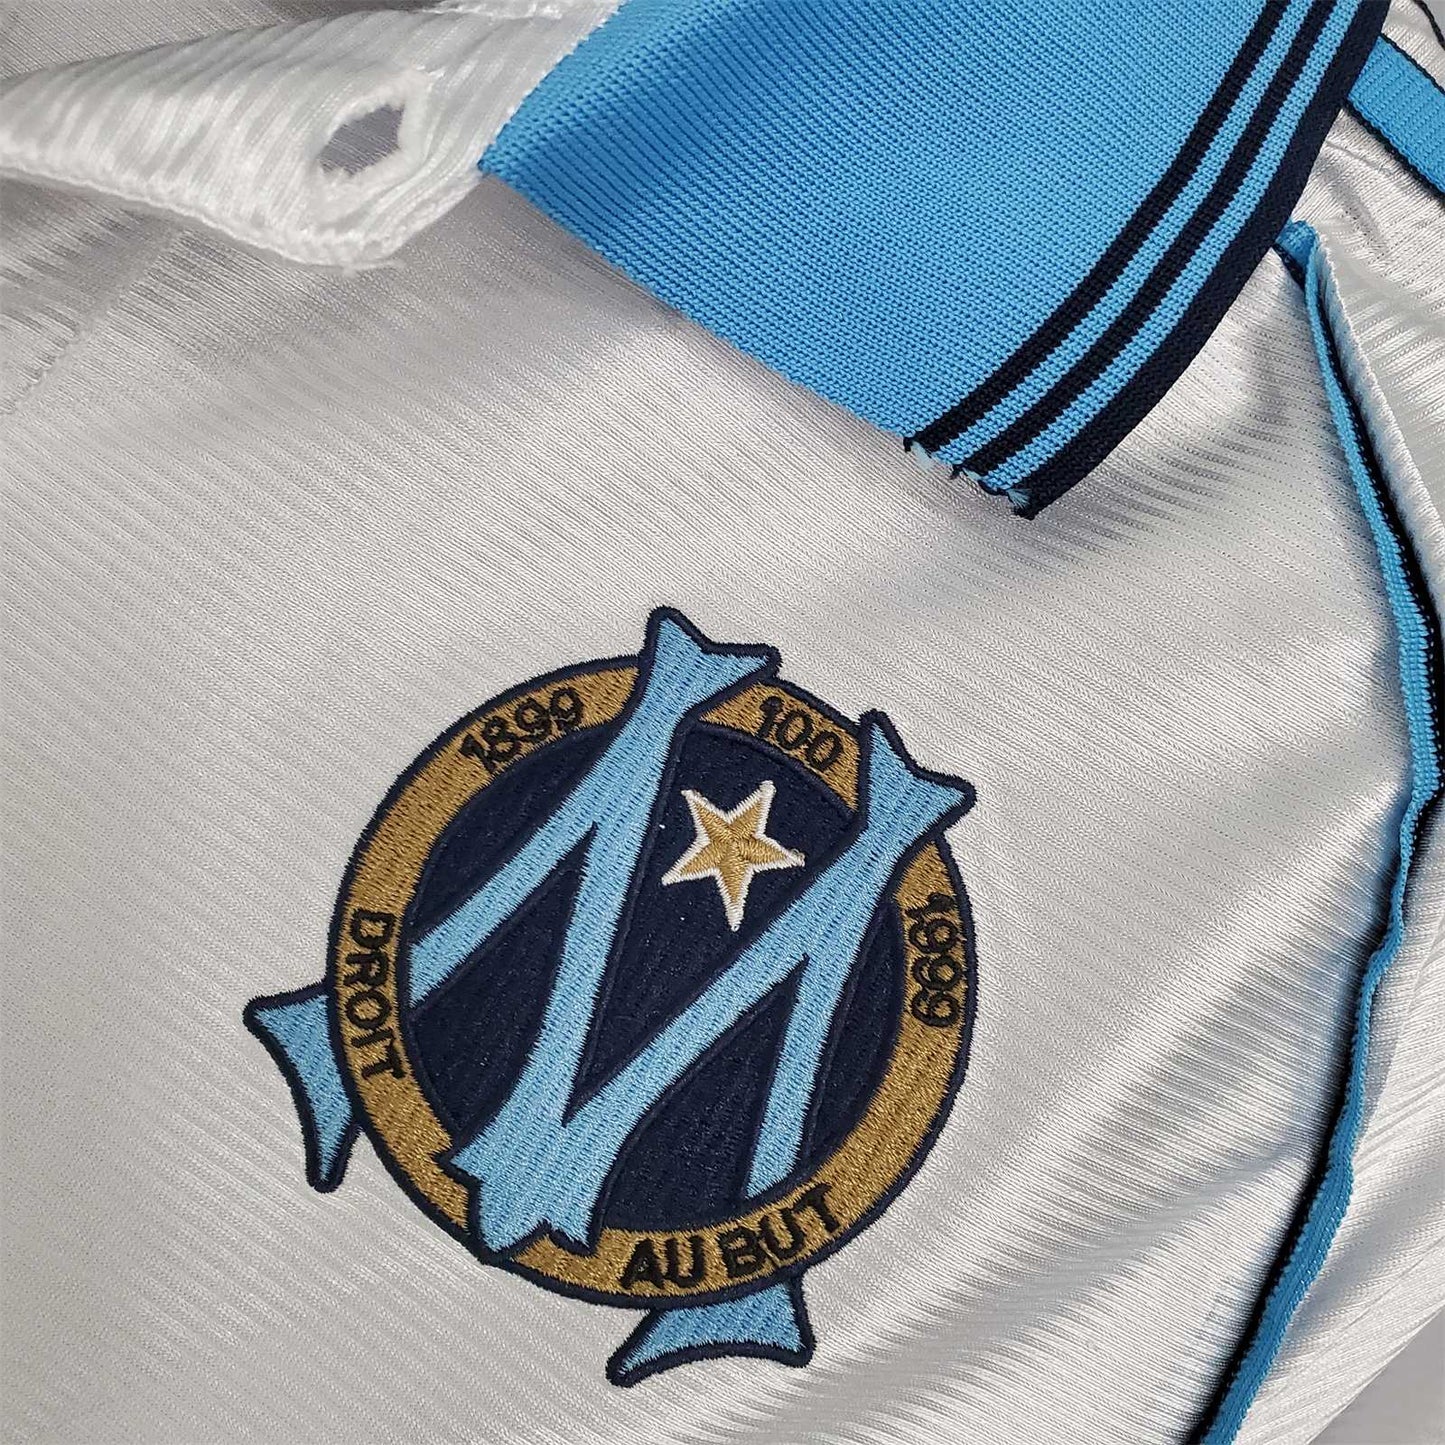 Olympique Marseille 98-99 Home Shirt